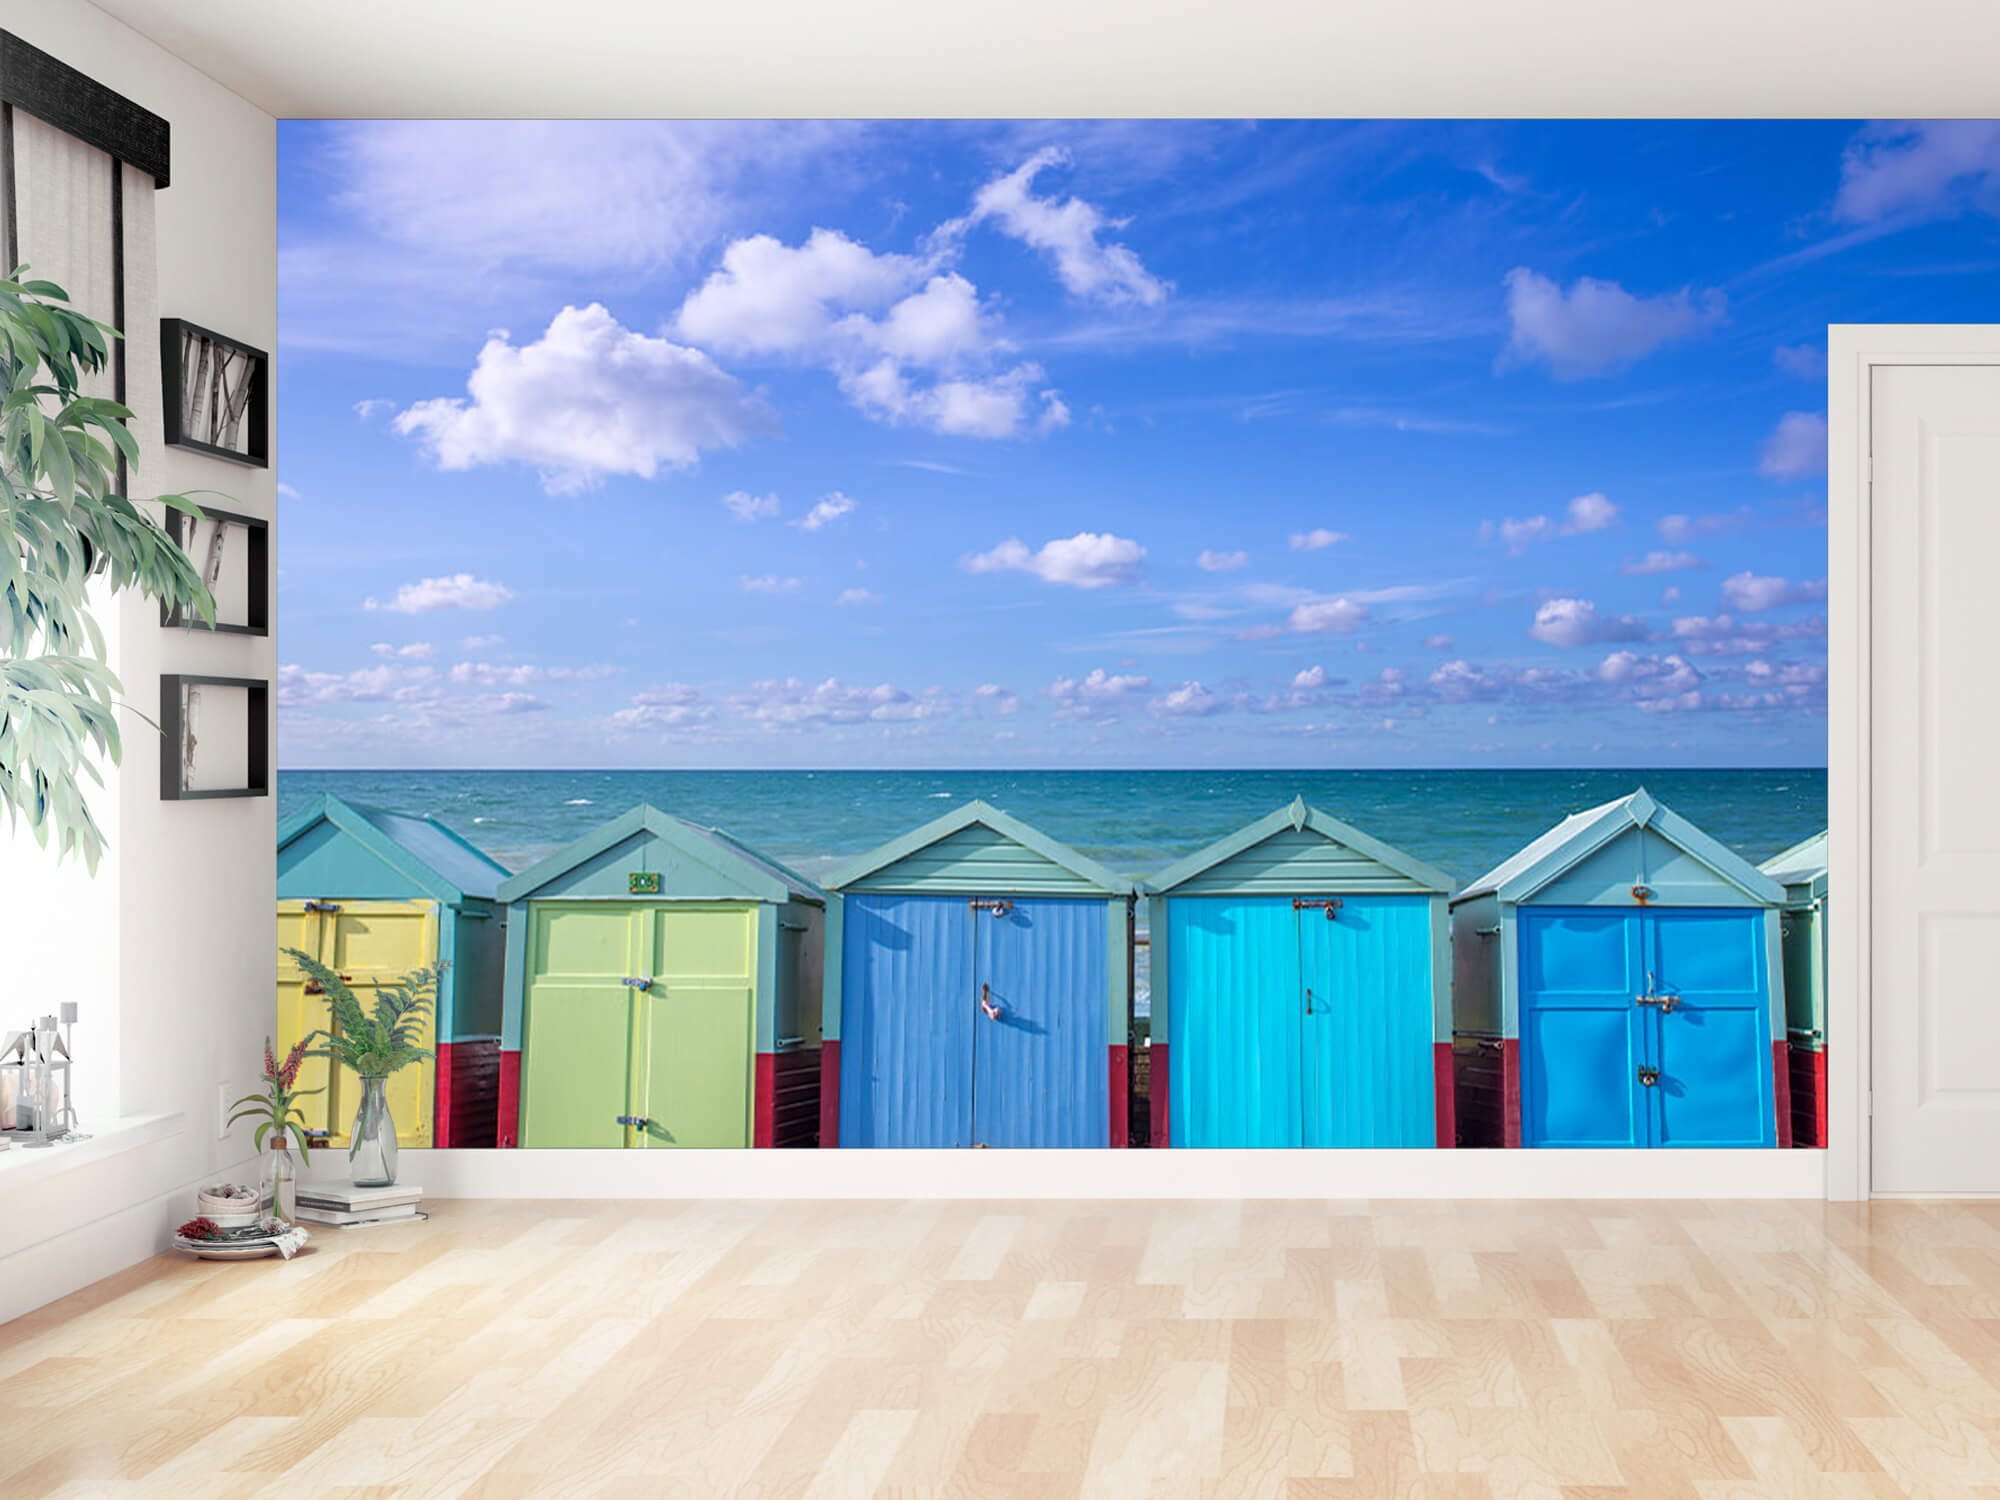  Papel pintado con Coloridas casetas de playa - Salón 11